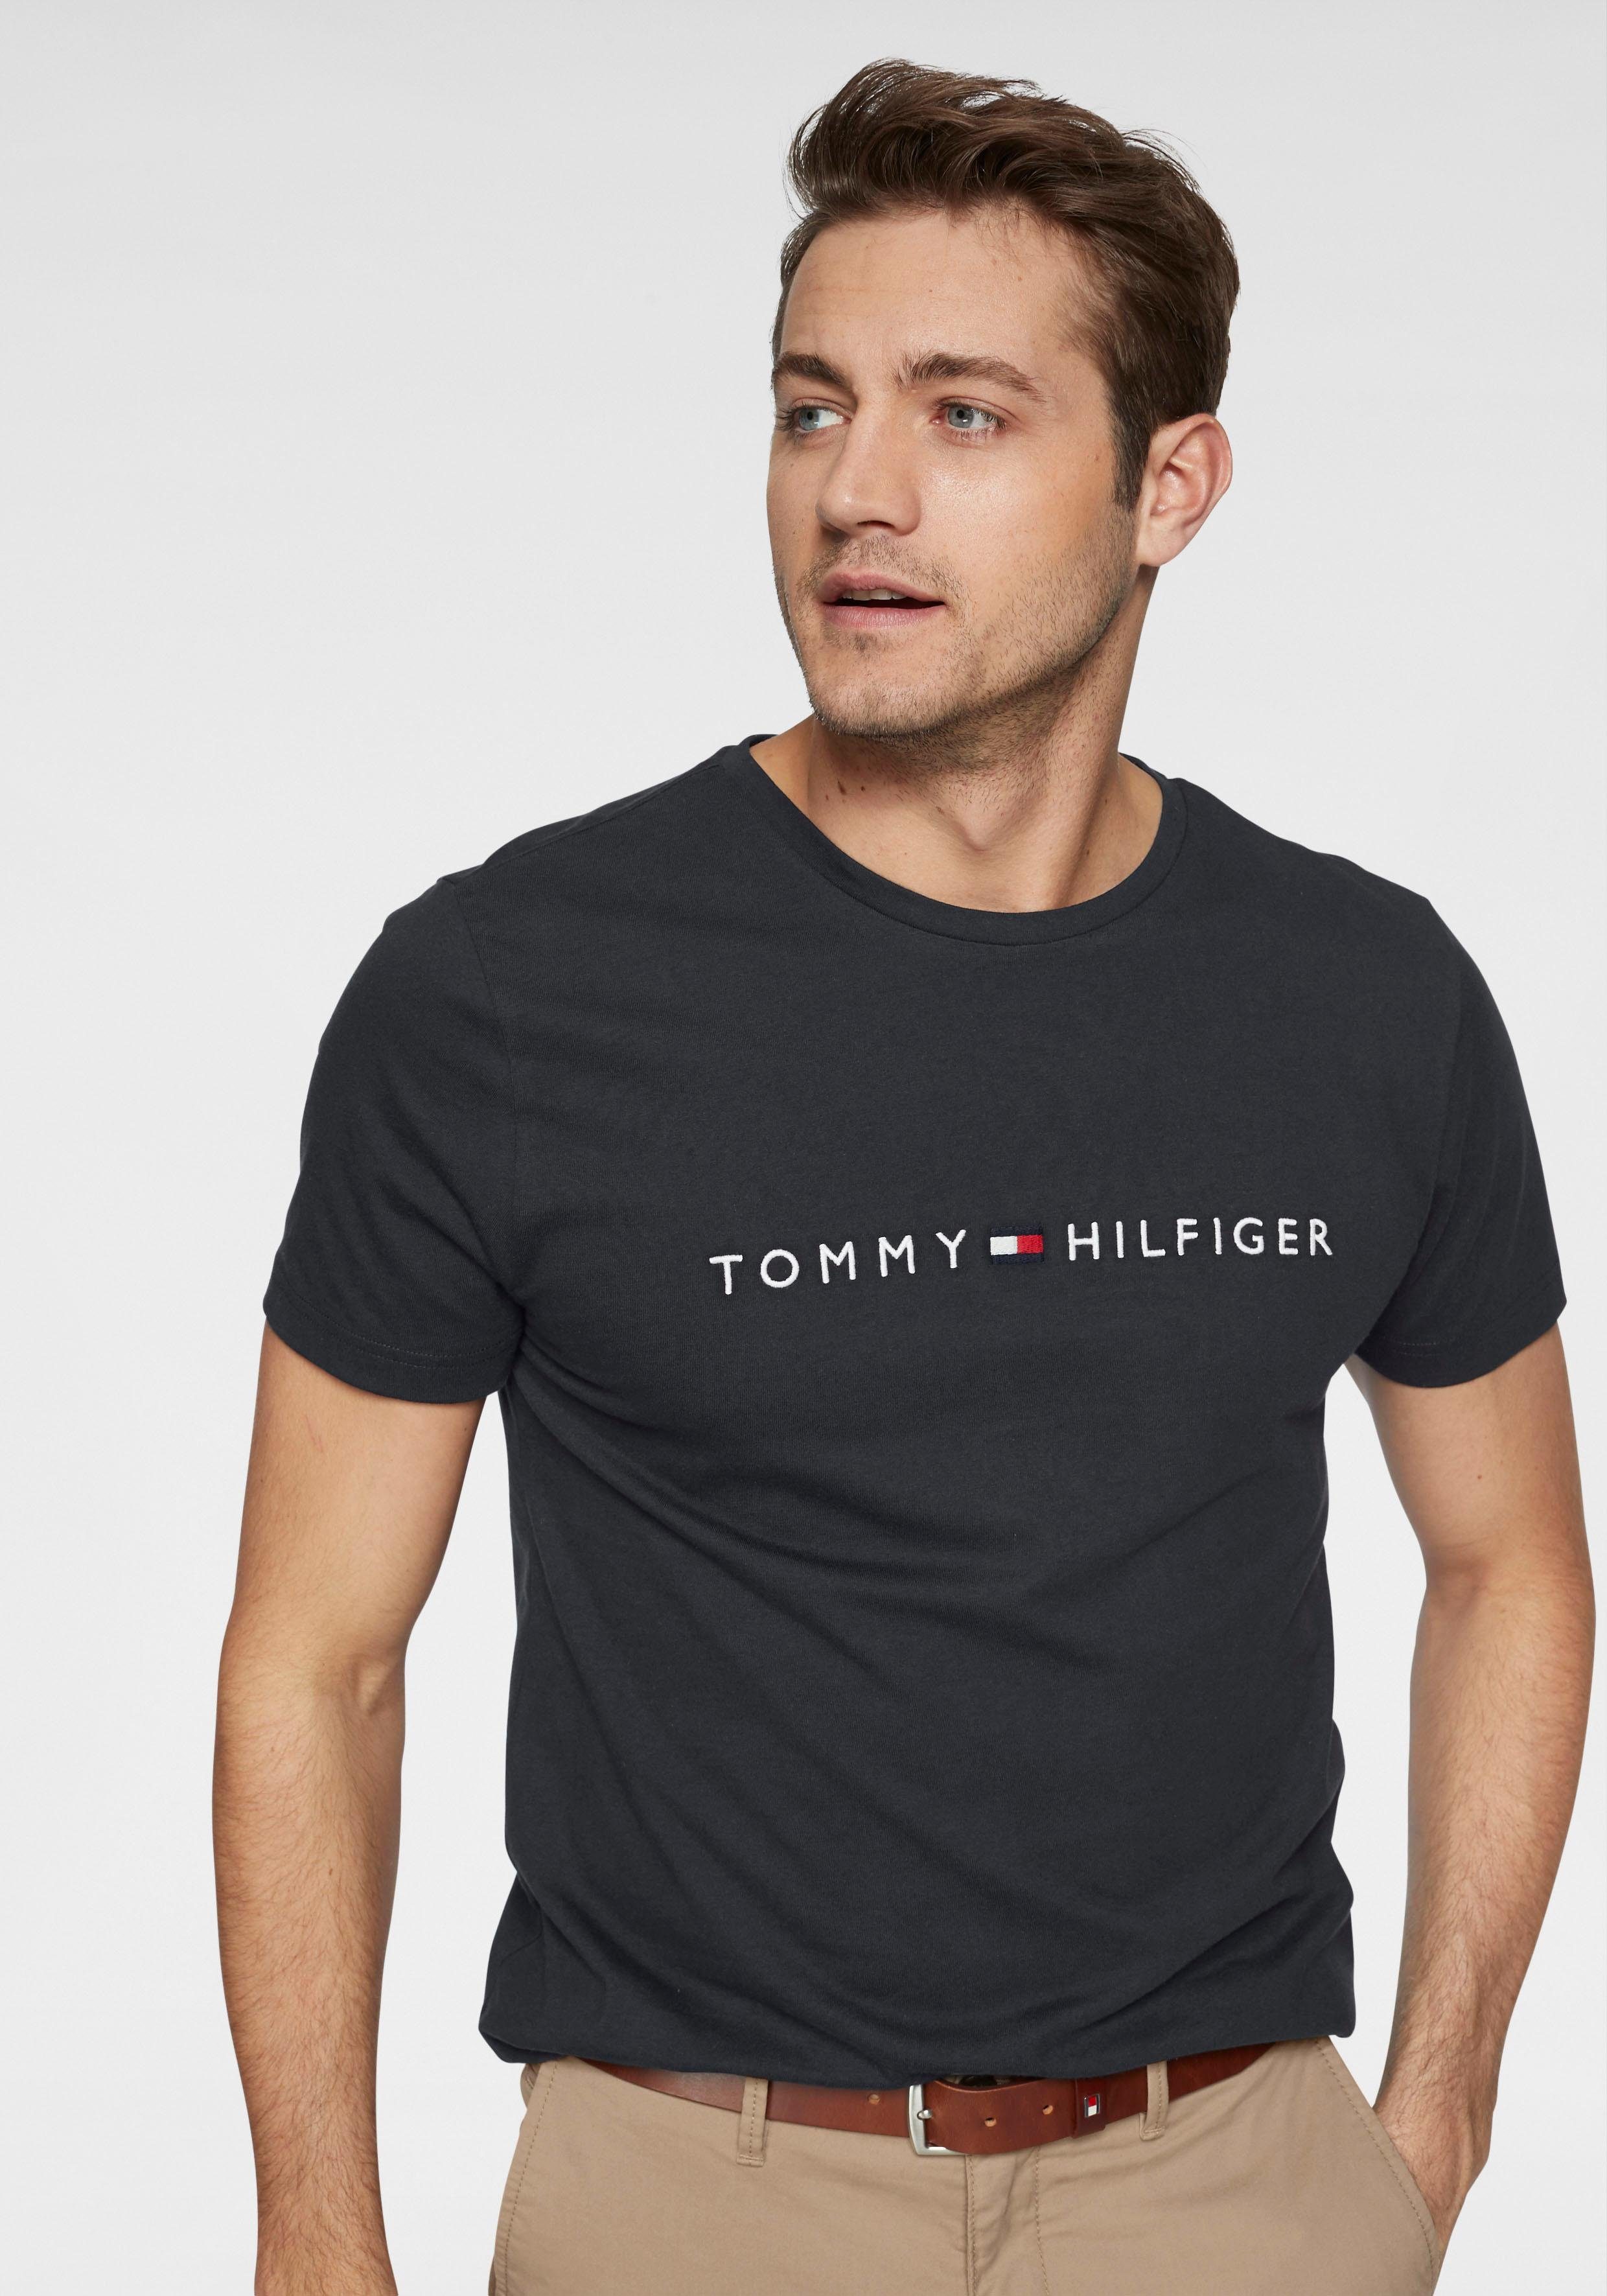 Aanstellen trui atleet Tommy Hilfiger T-shirts heren online kopen | Shop nu | OTTO